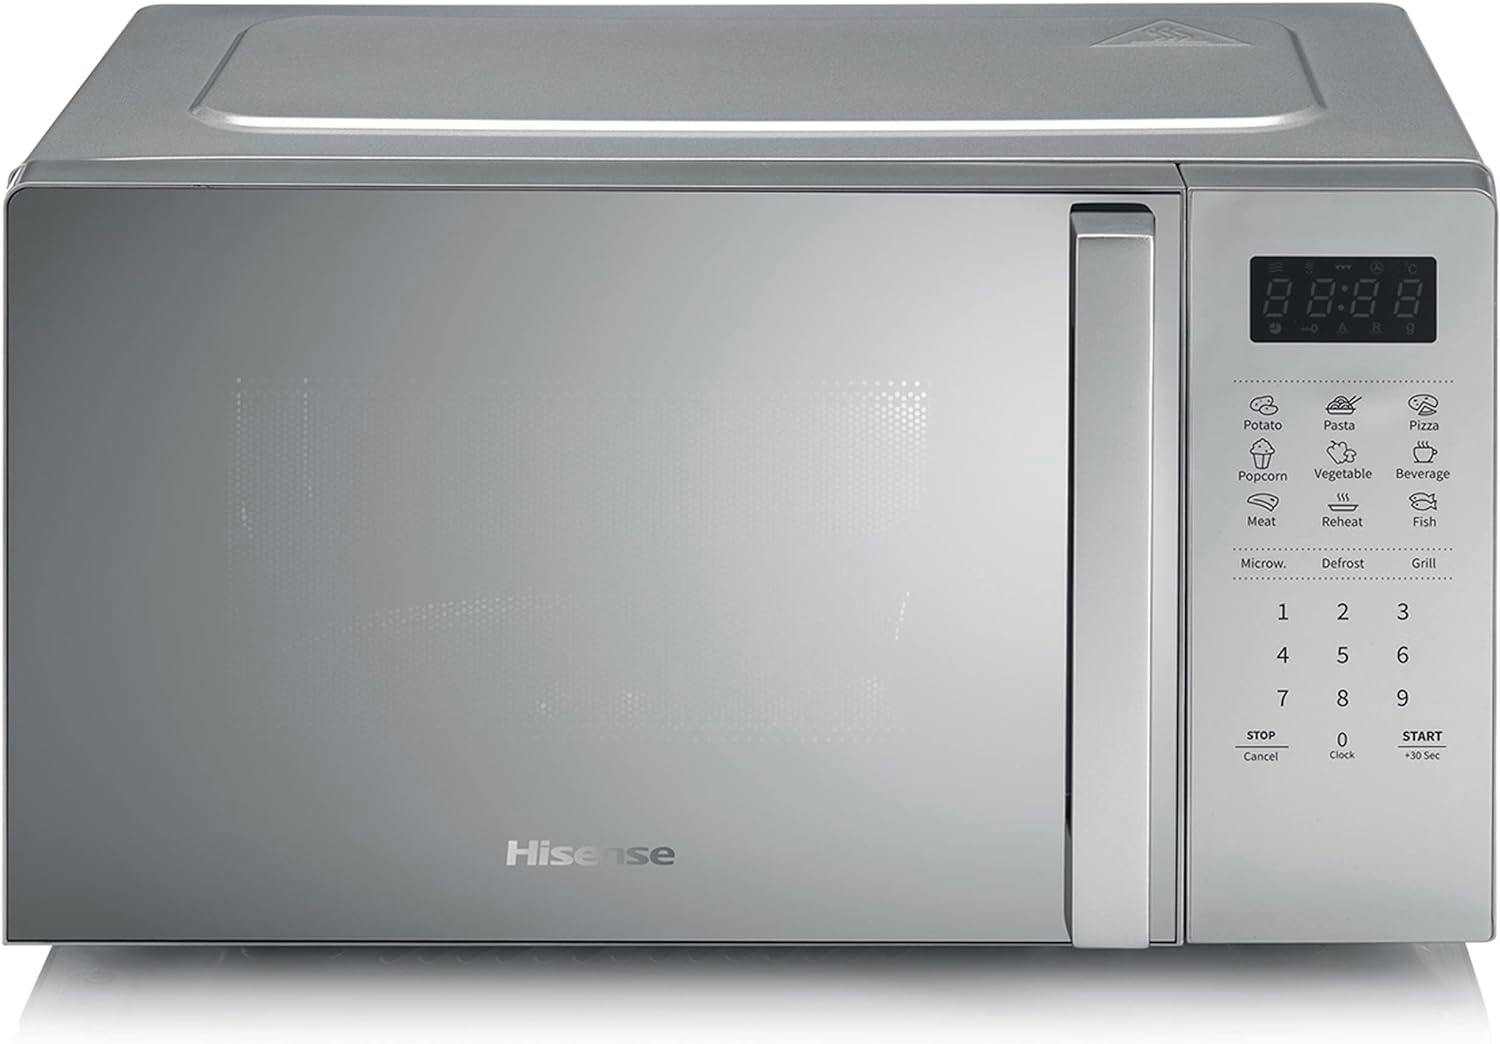 Hisense: forno microonde da 23L e 800W in SUPER OFFERTA al 44%